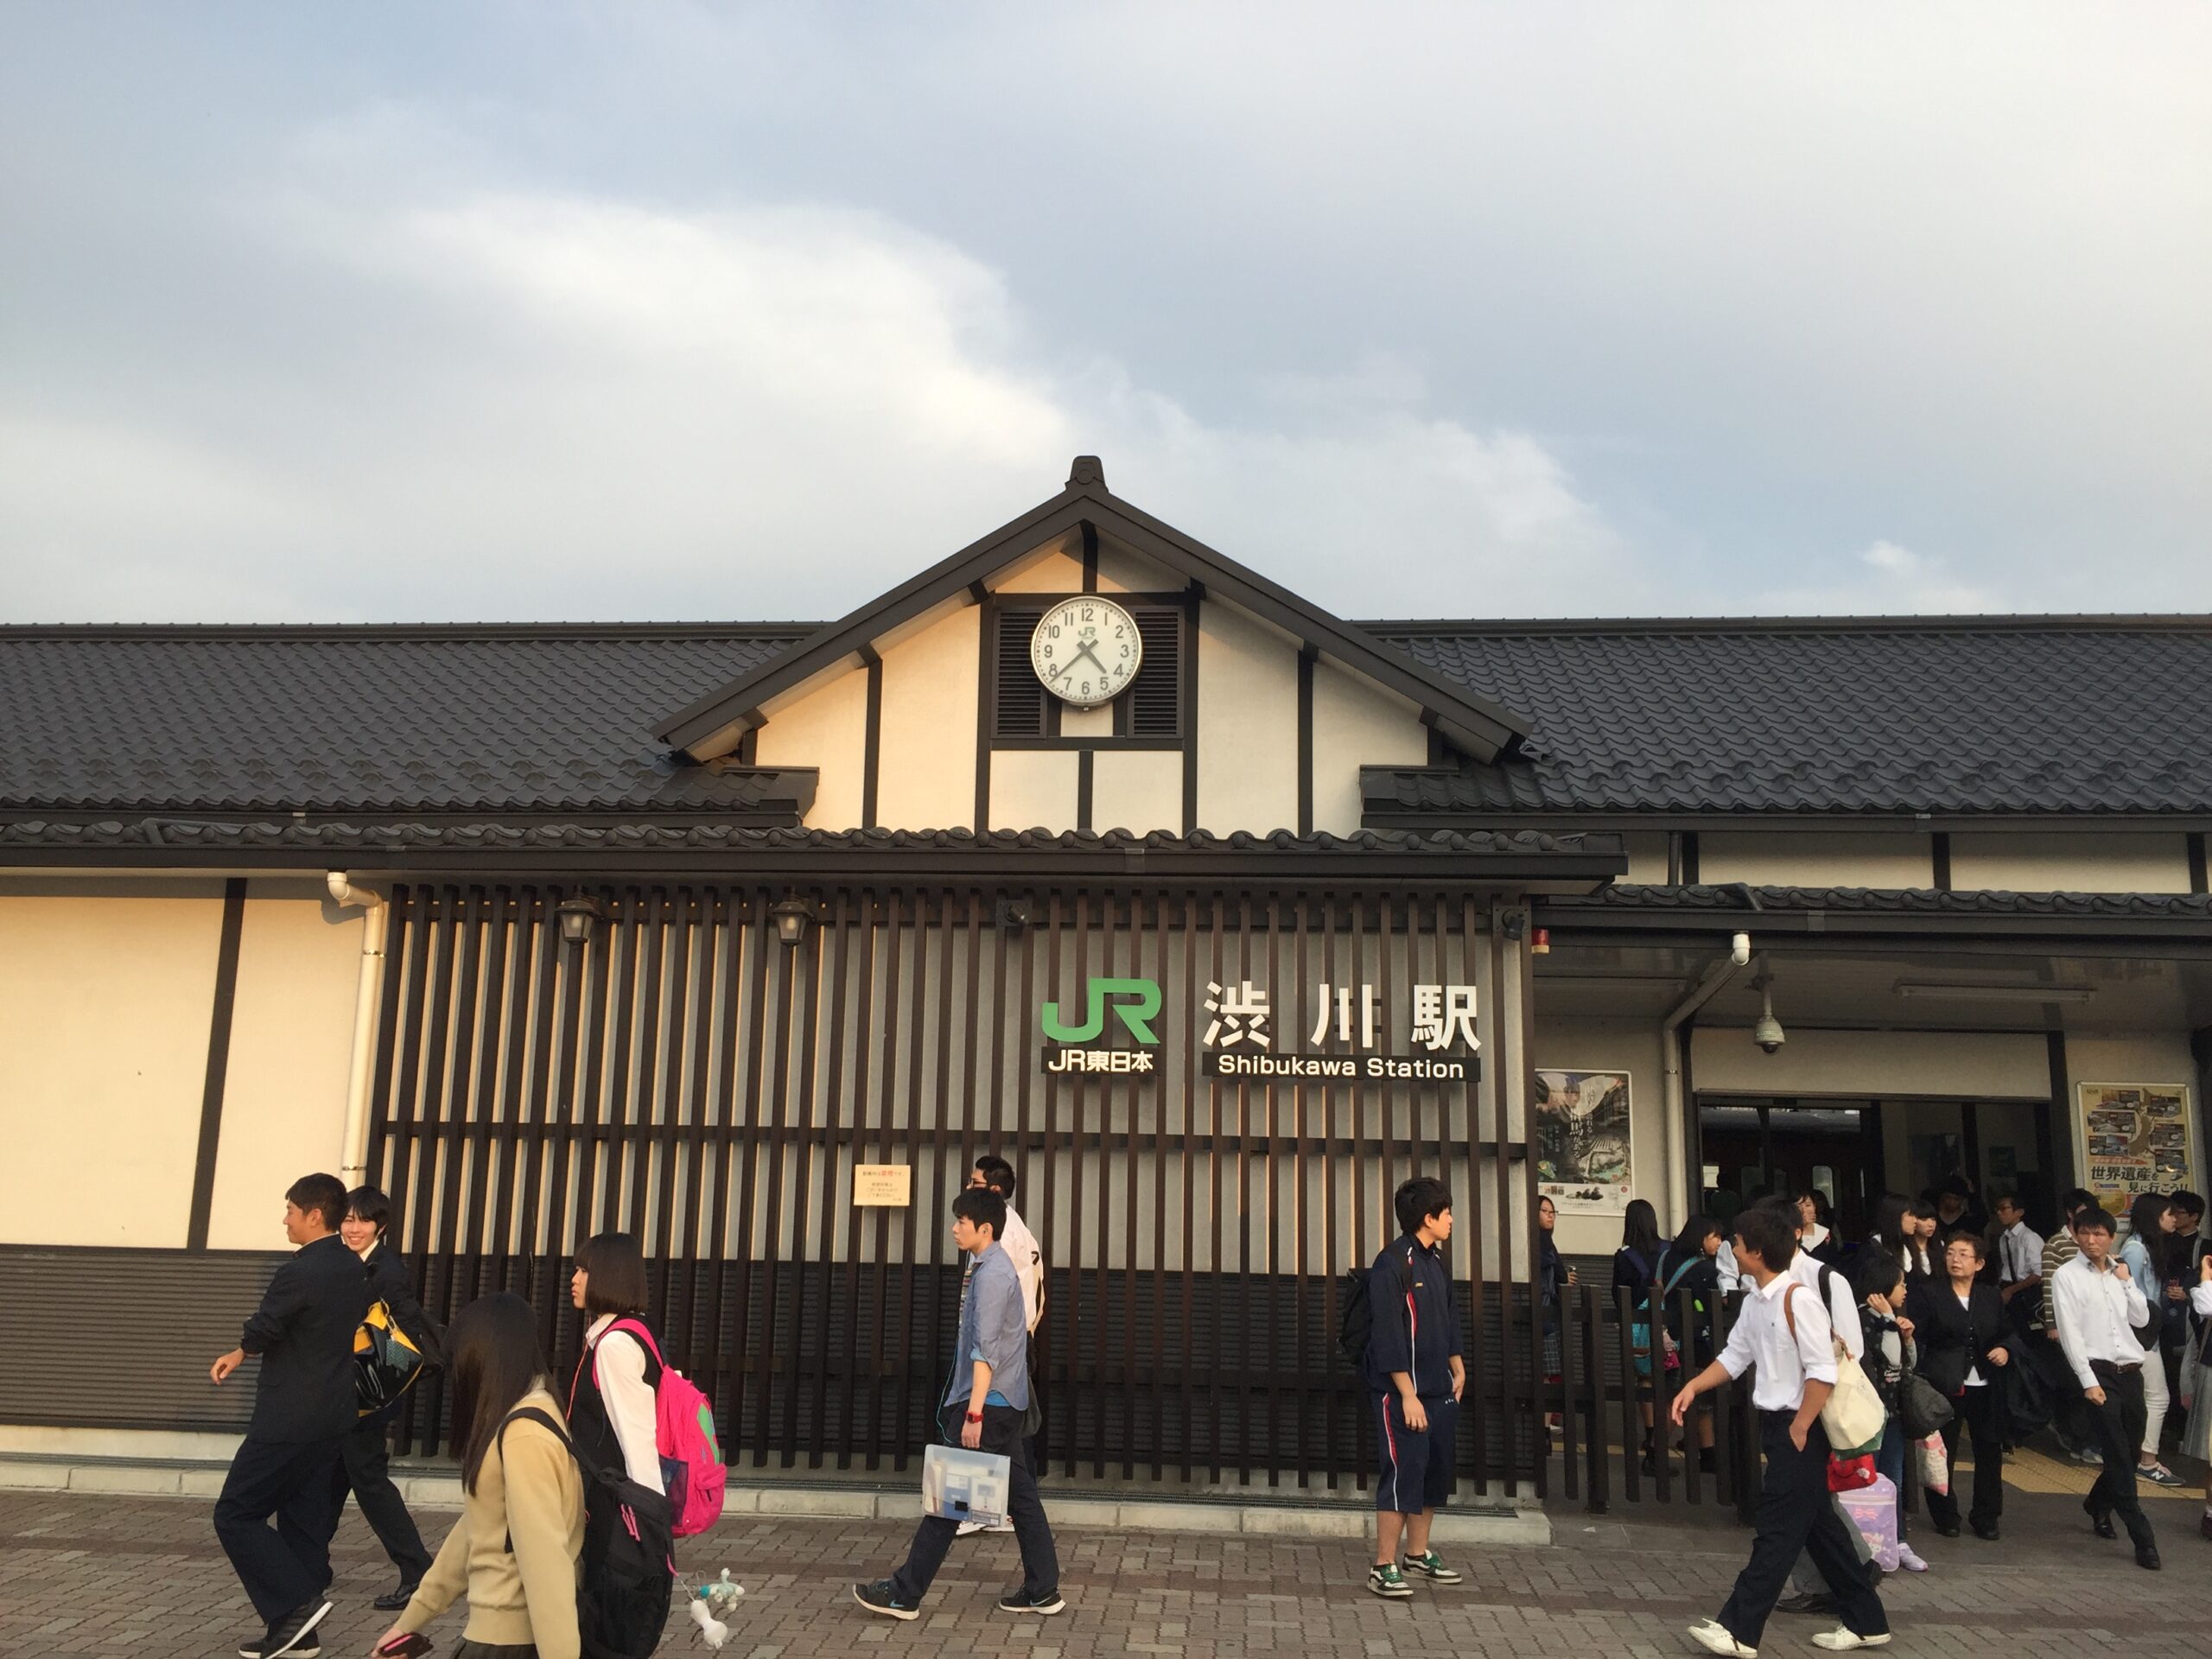 行きに撮った渋川駅。ここから伊香保温泉まではバスを利用。因みに伊香保温泉行きは③番乗り場。